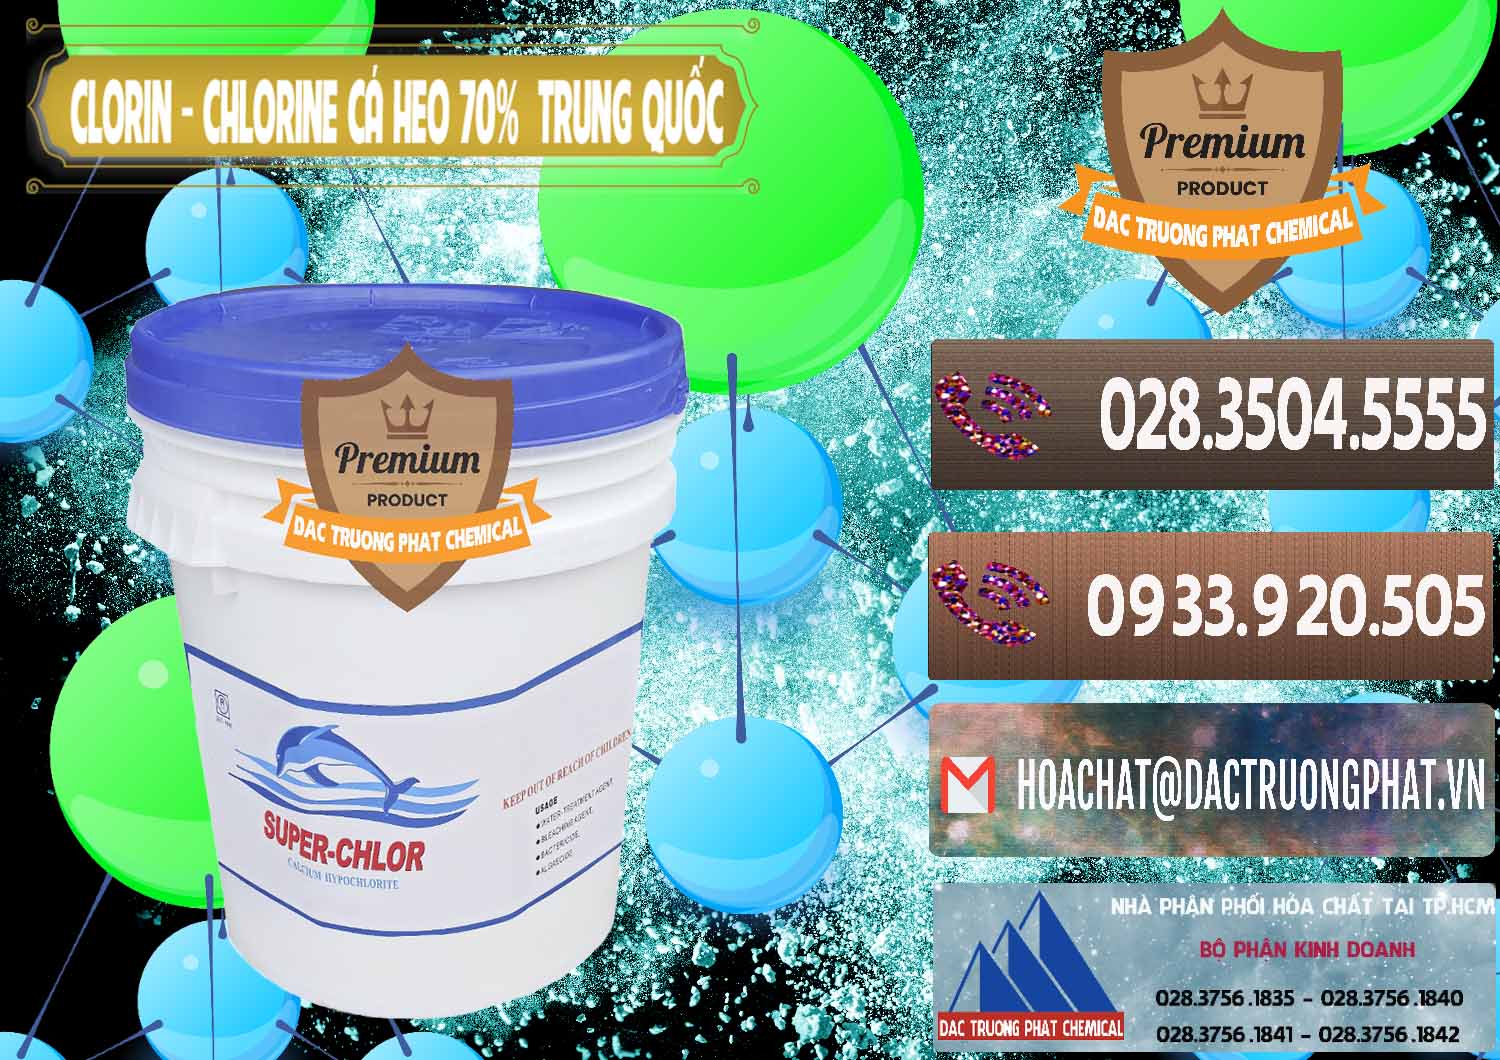 Công ty chuyên nhập khẩu & bán Clorin - Chlorine Cá Heo 70% Super Chlor Nắp Xanh Trung Quốc China - 0209 - Công ty cung cấp và phân phối hóa chất tại TP.HCM - hoachatviet.net